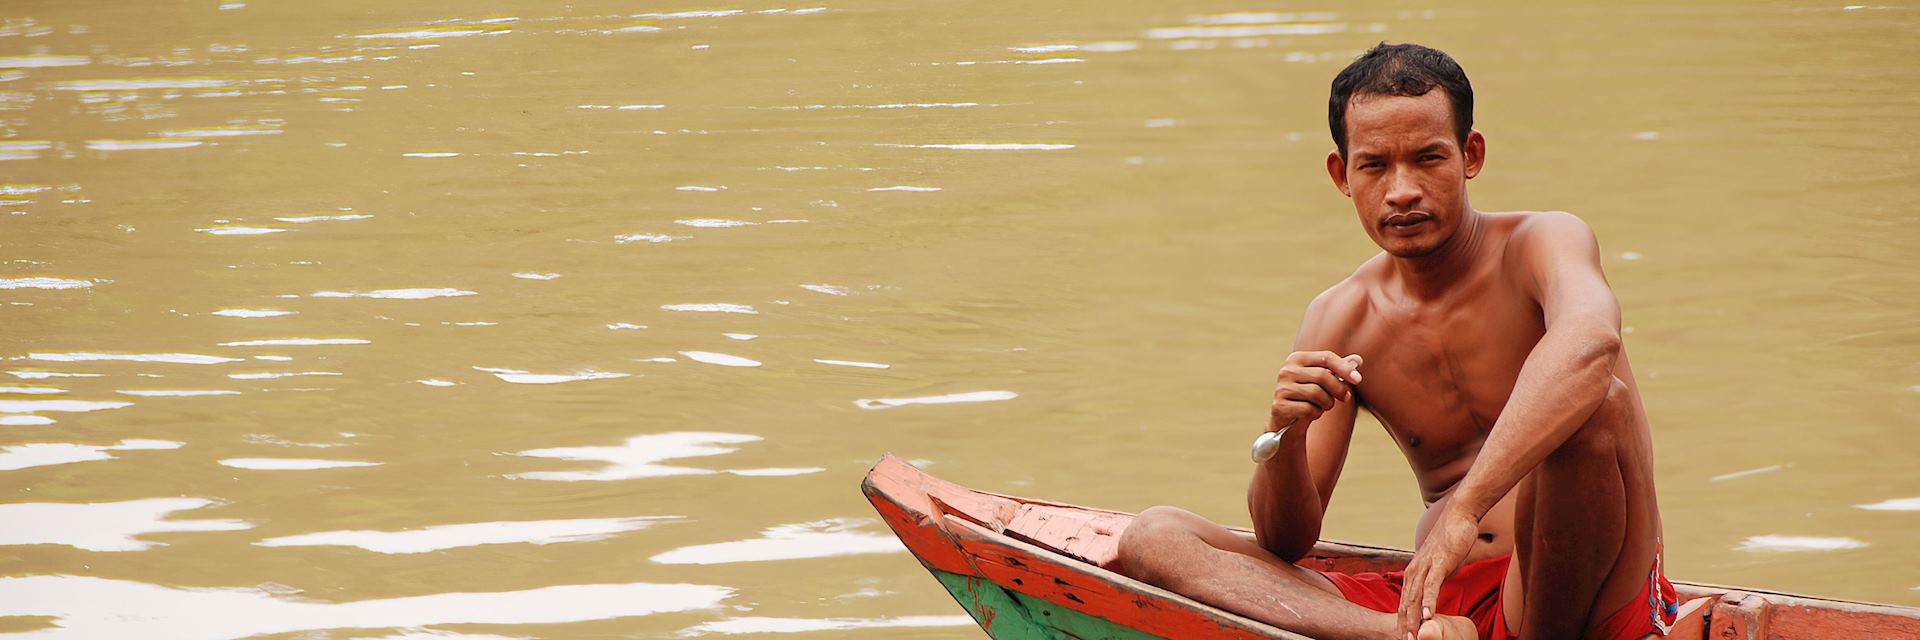 Boatman in Koh Kong